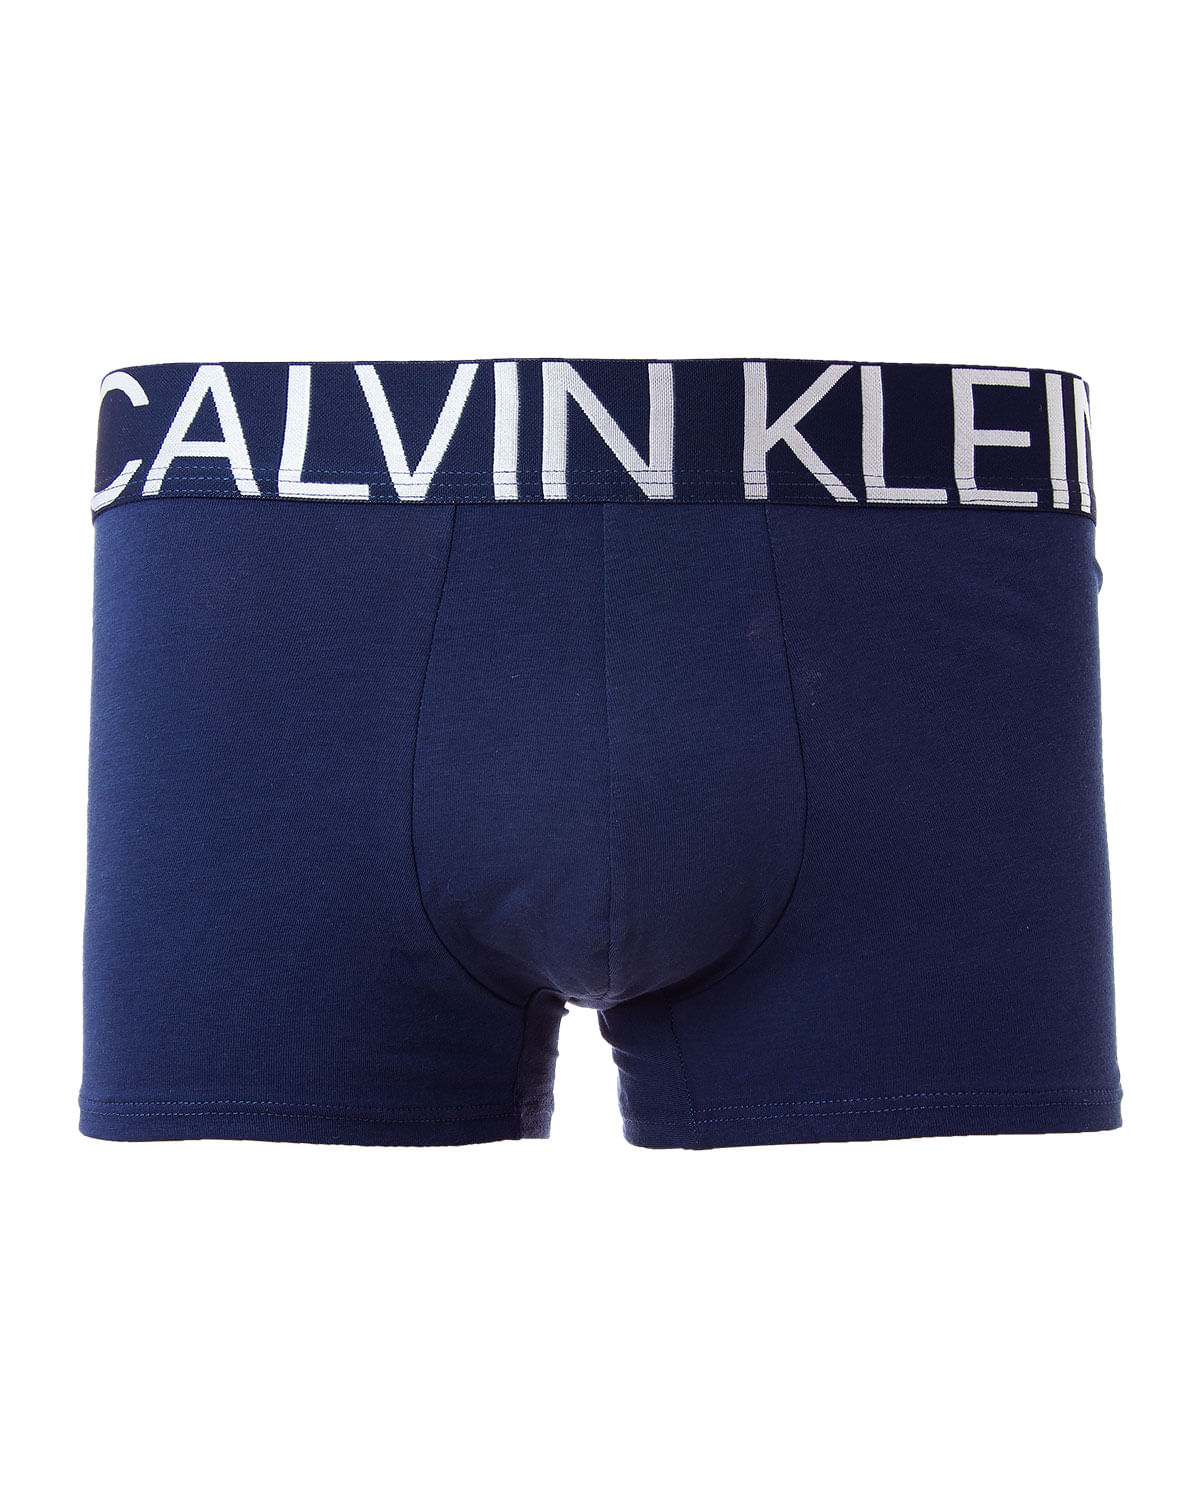 Cueca Calvin Klein Trunk/Boxer Azul Marinho Algodão/Elastano - G